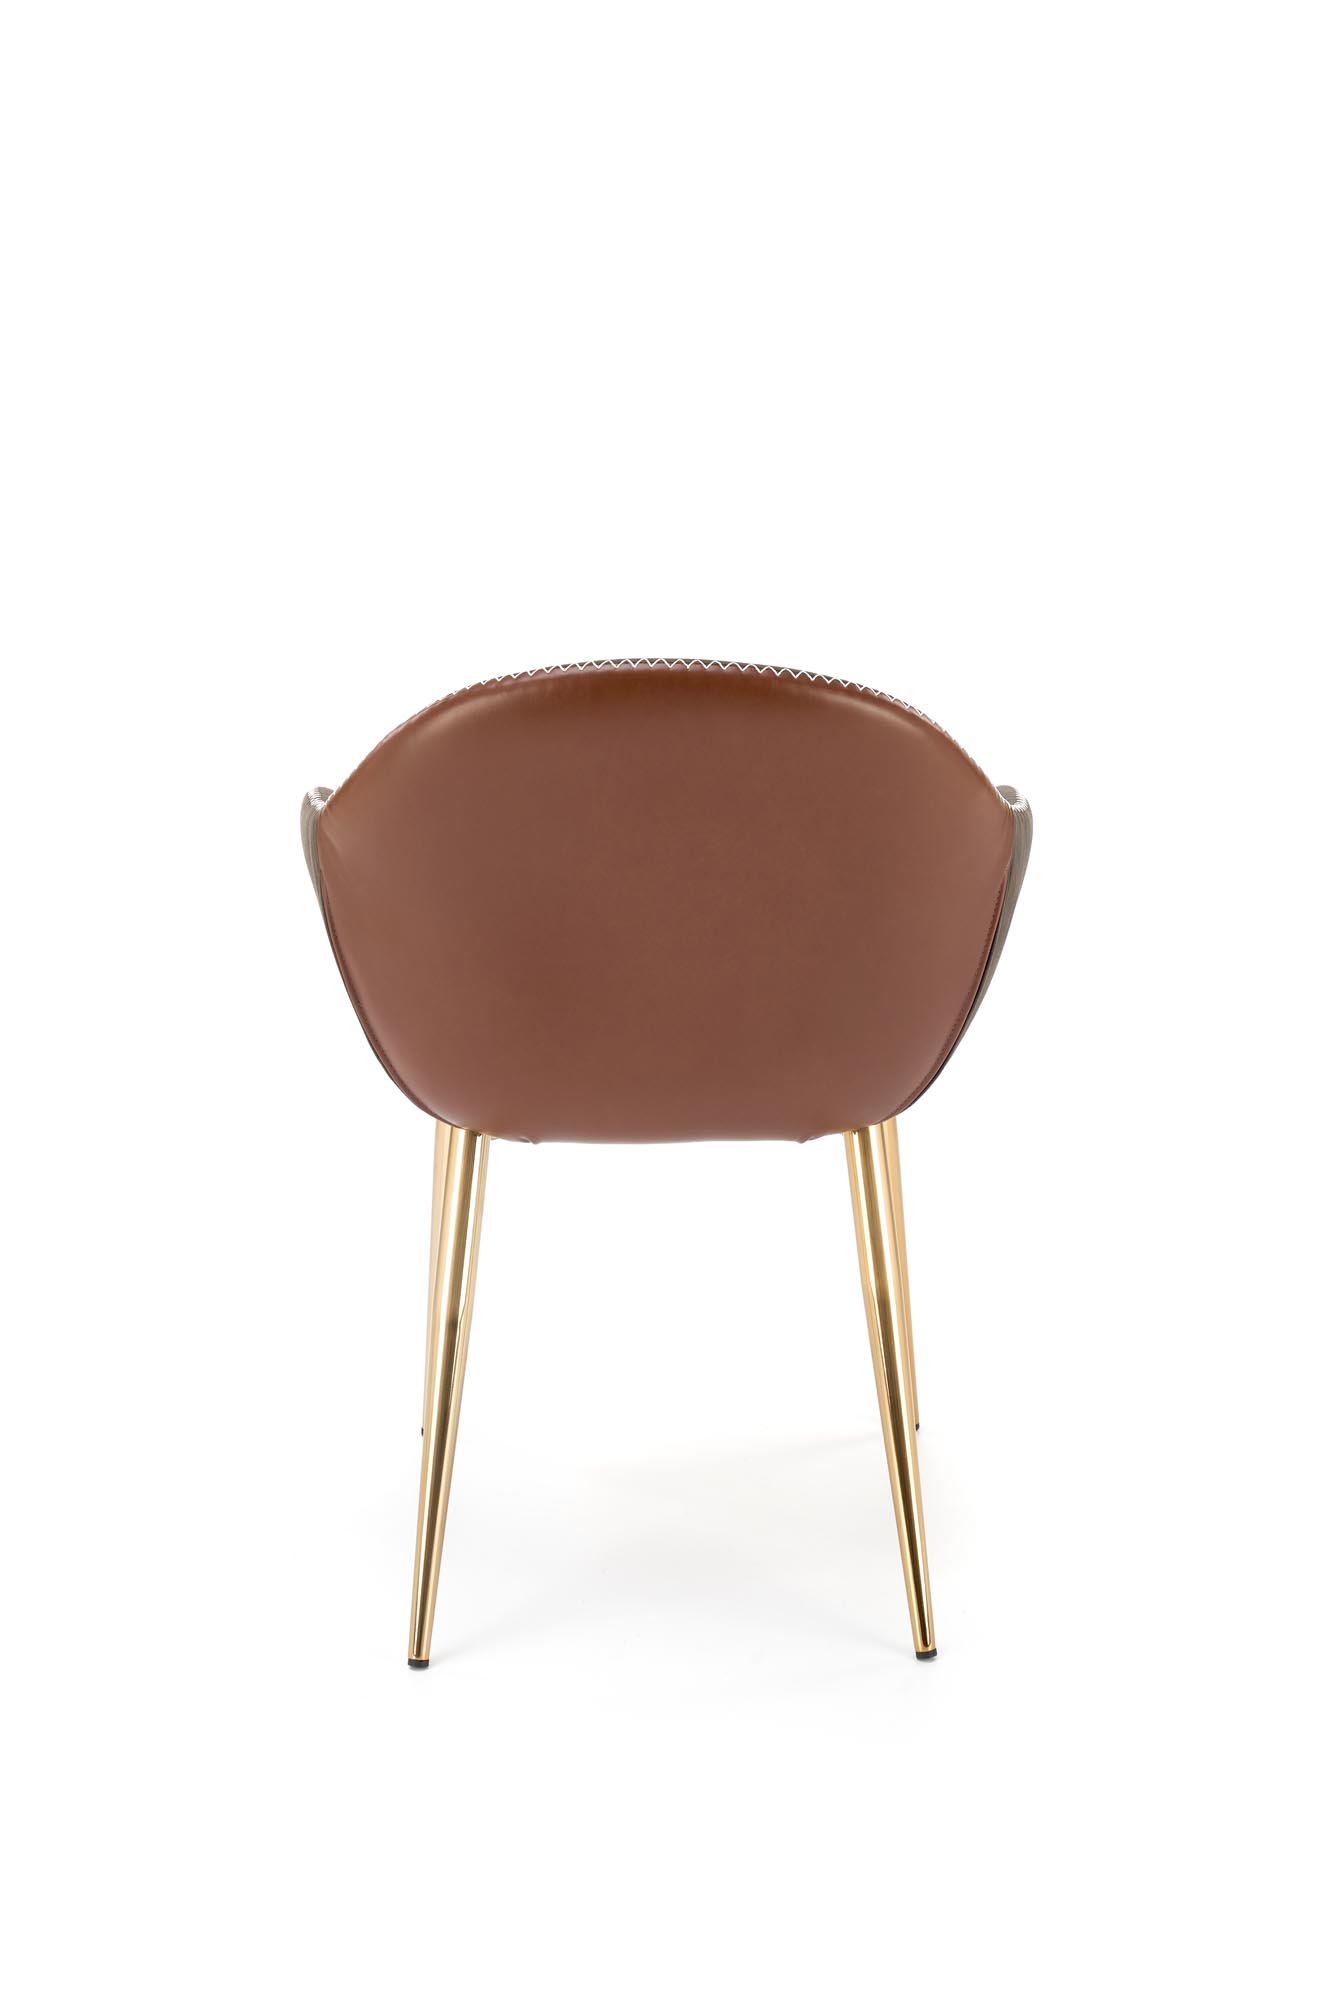 K304 szék - hamu sötét / barna / sárga krómozott  k304 szék sötét popiel / brazowy / aranysárga chrom